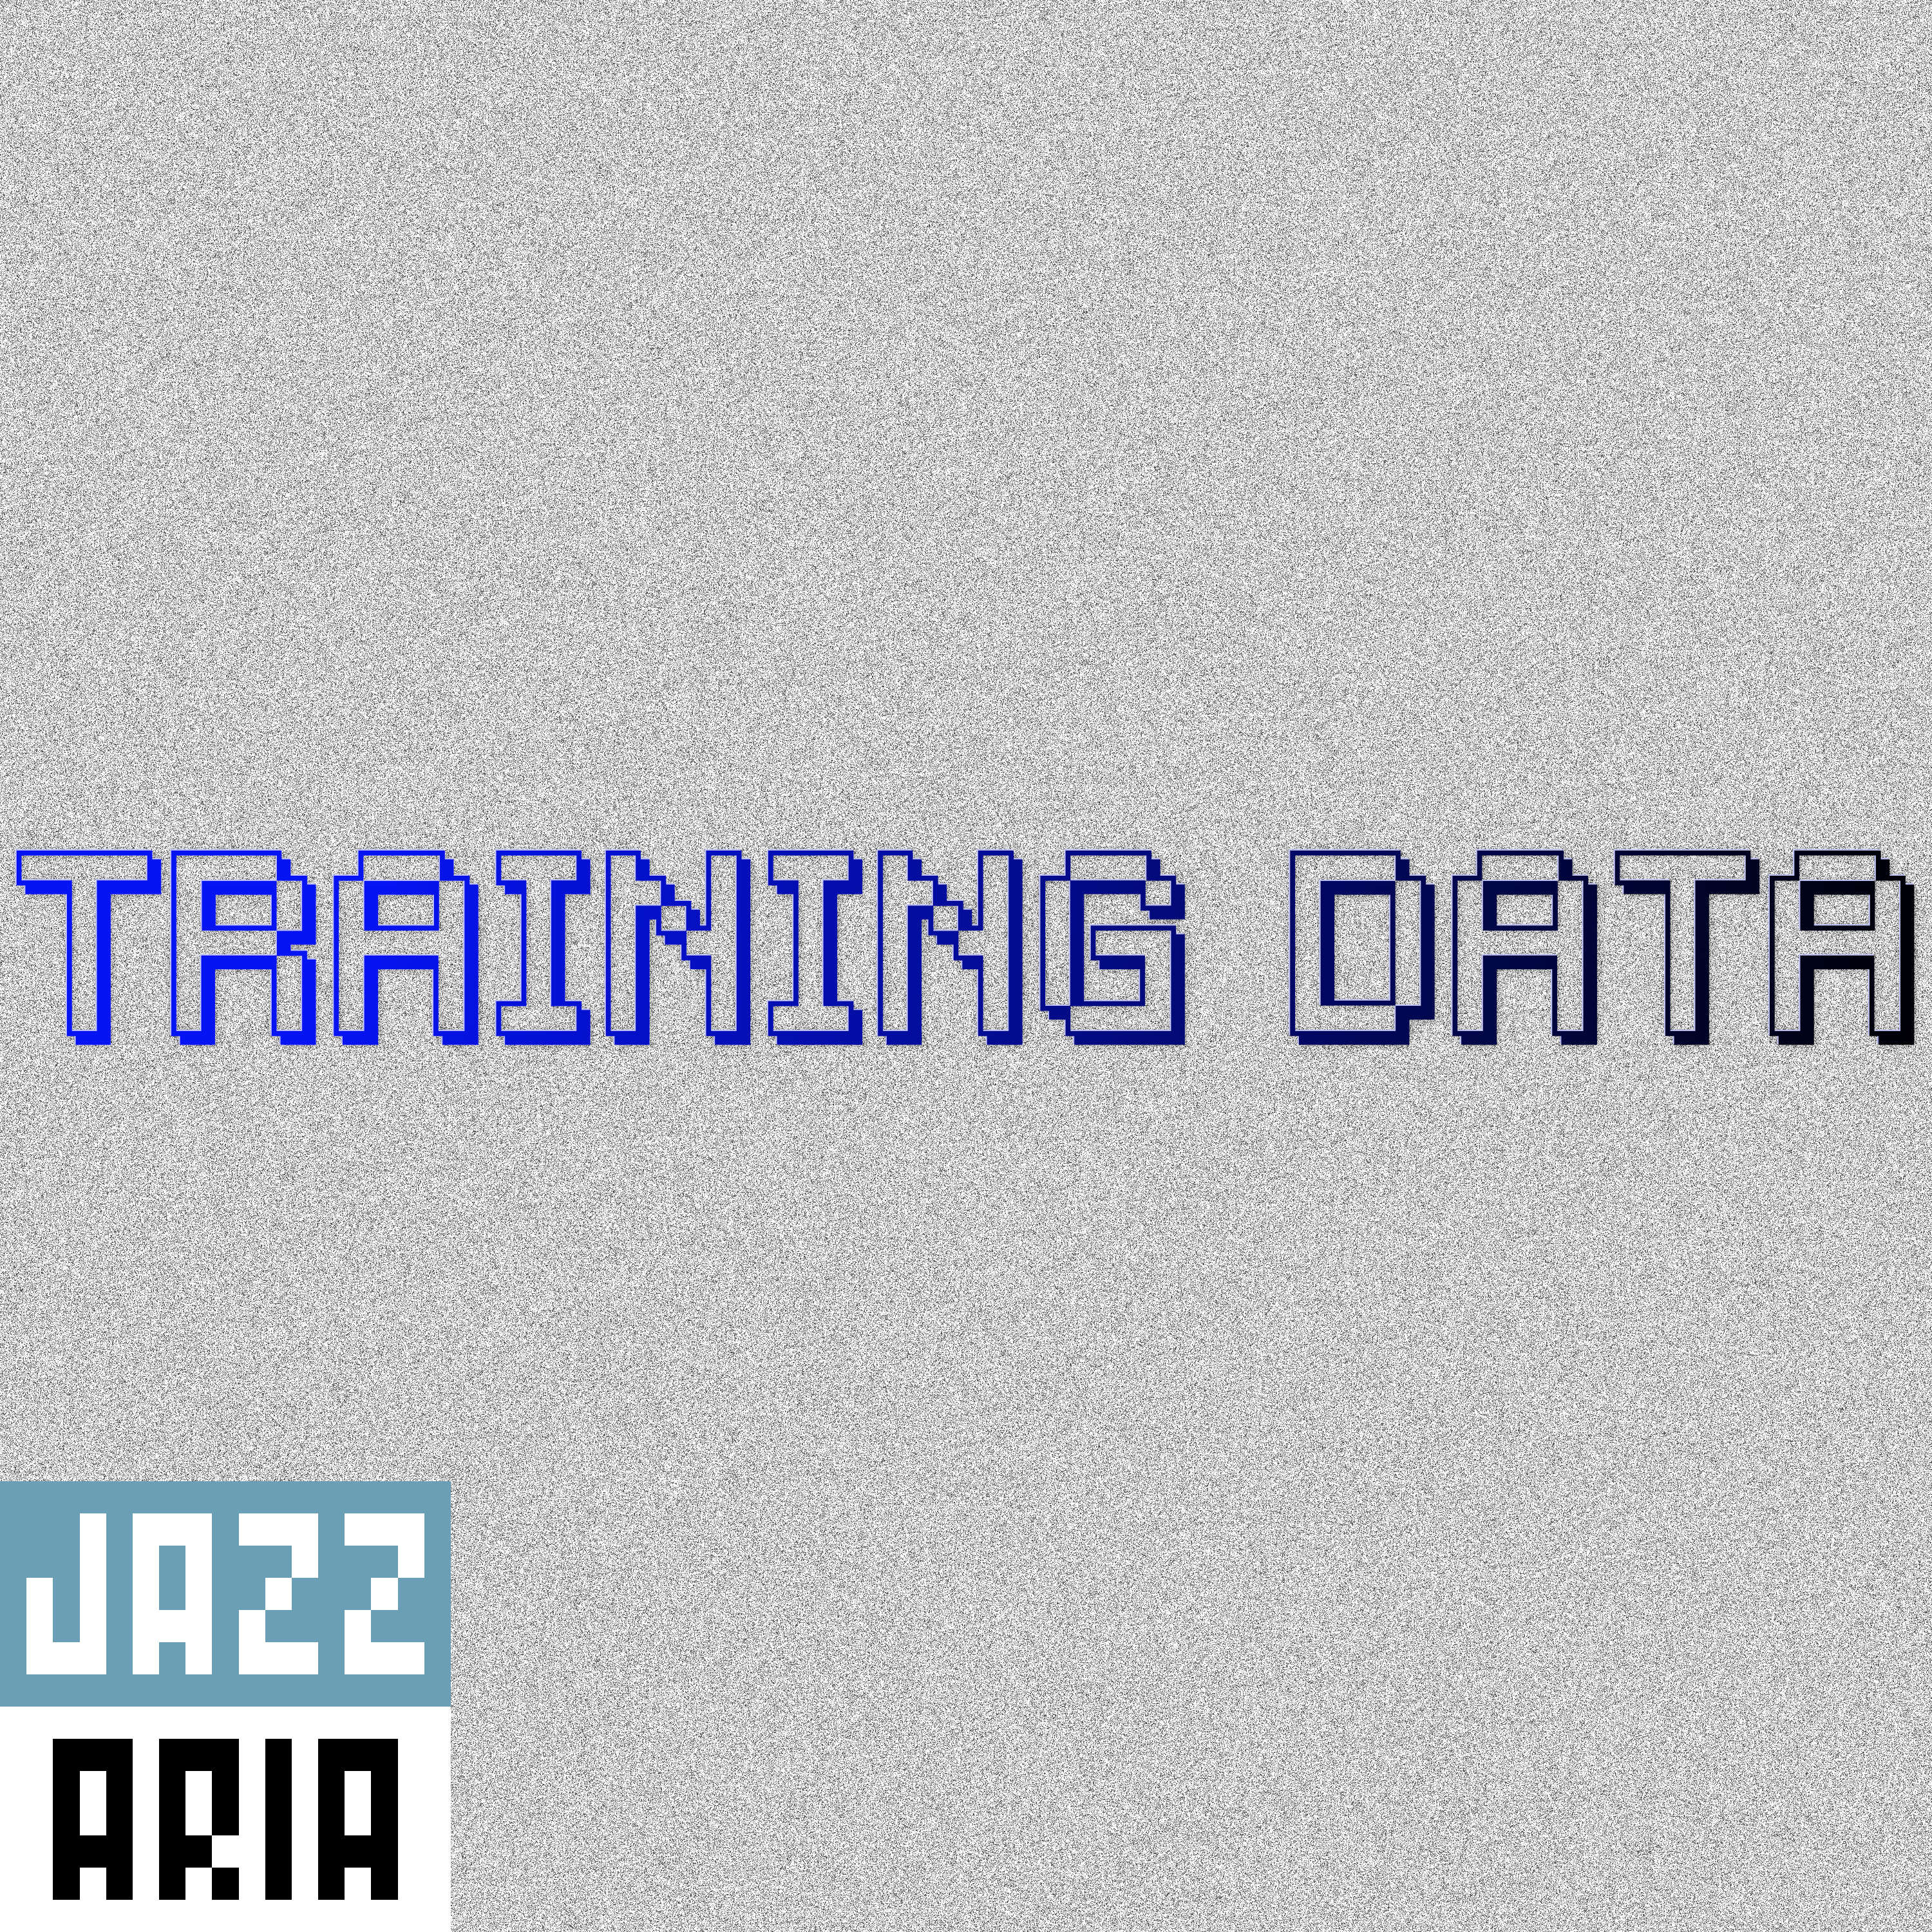 Jazzaria – Training Data